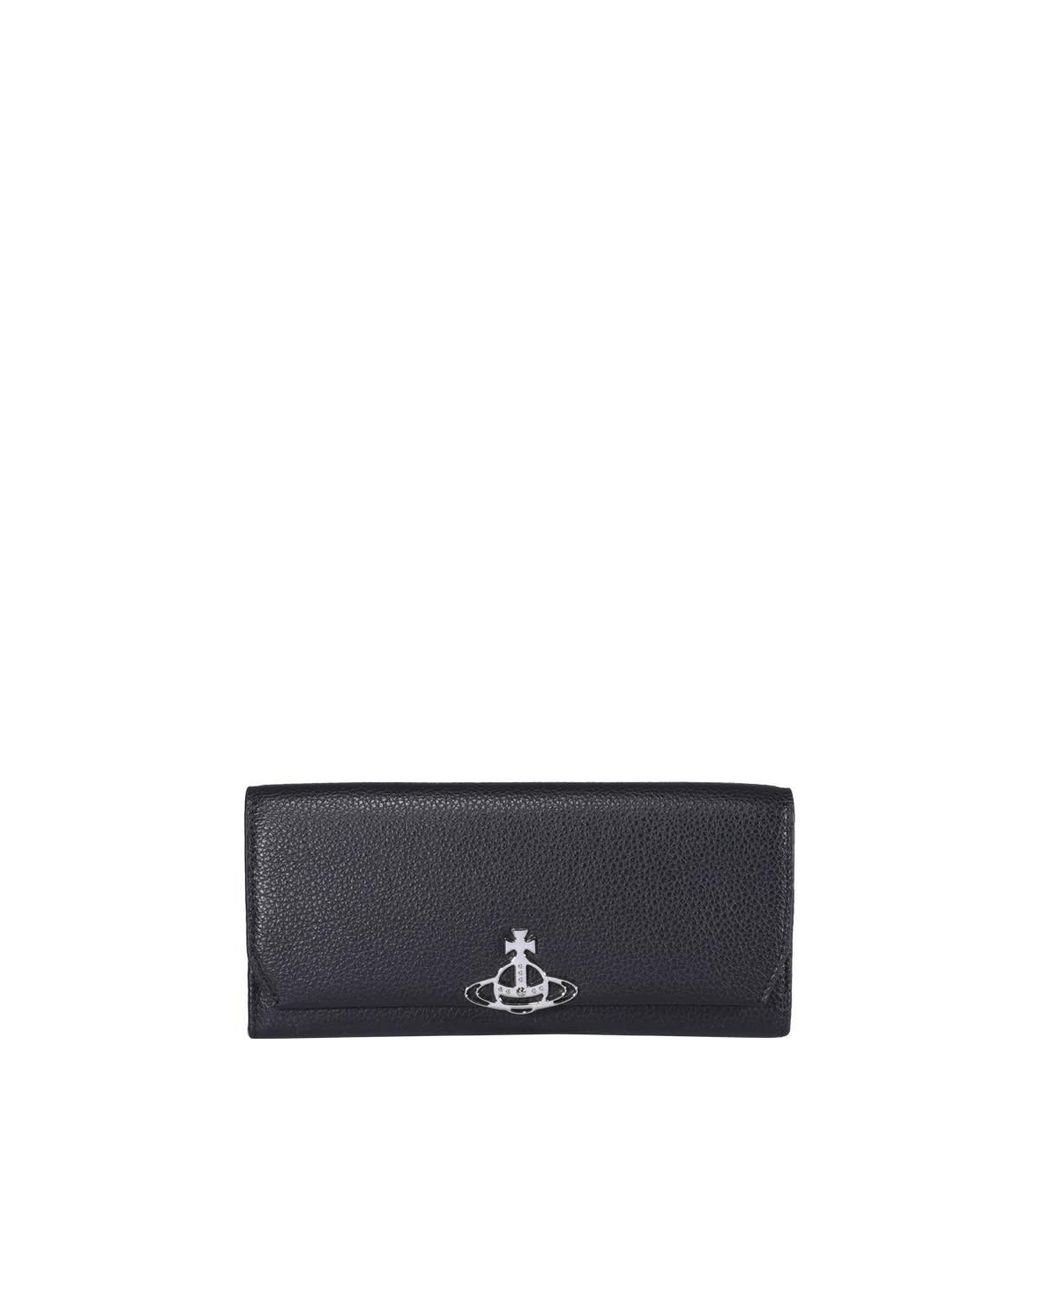 Vivienne Westwood Leather Jordan Wallet in Black - Save 6% | Lyst